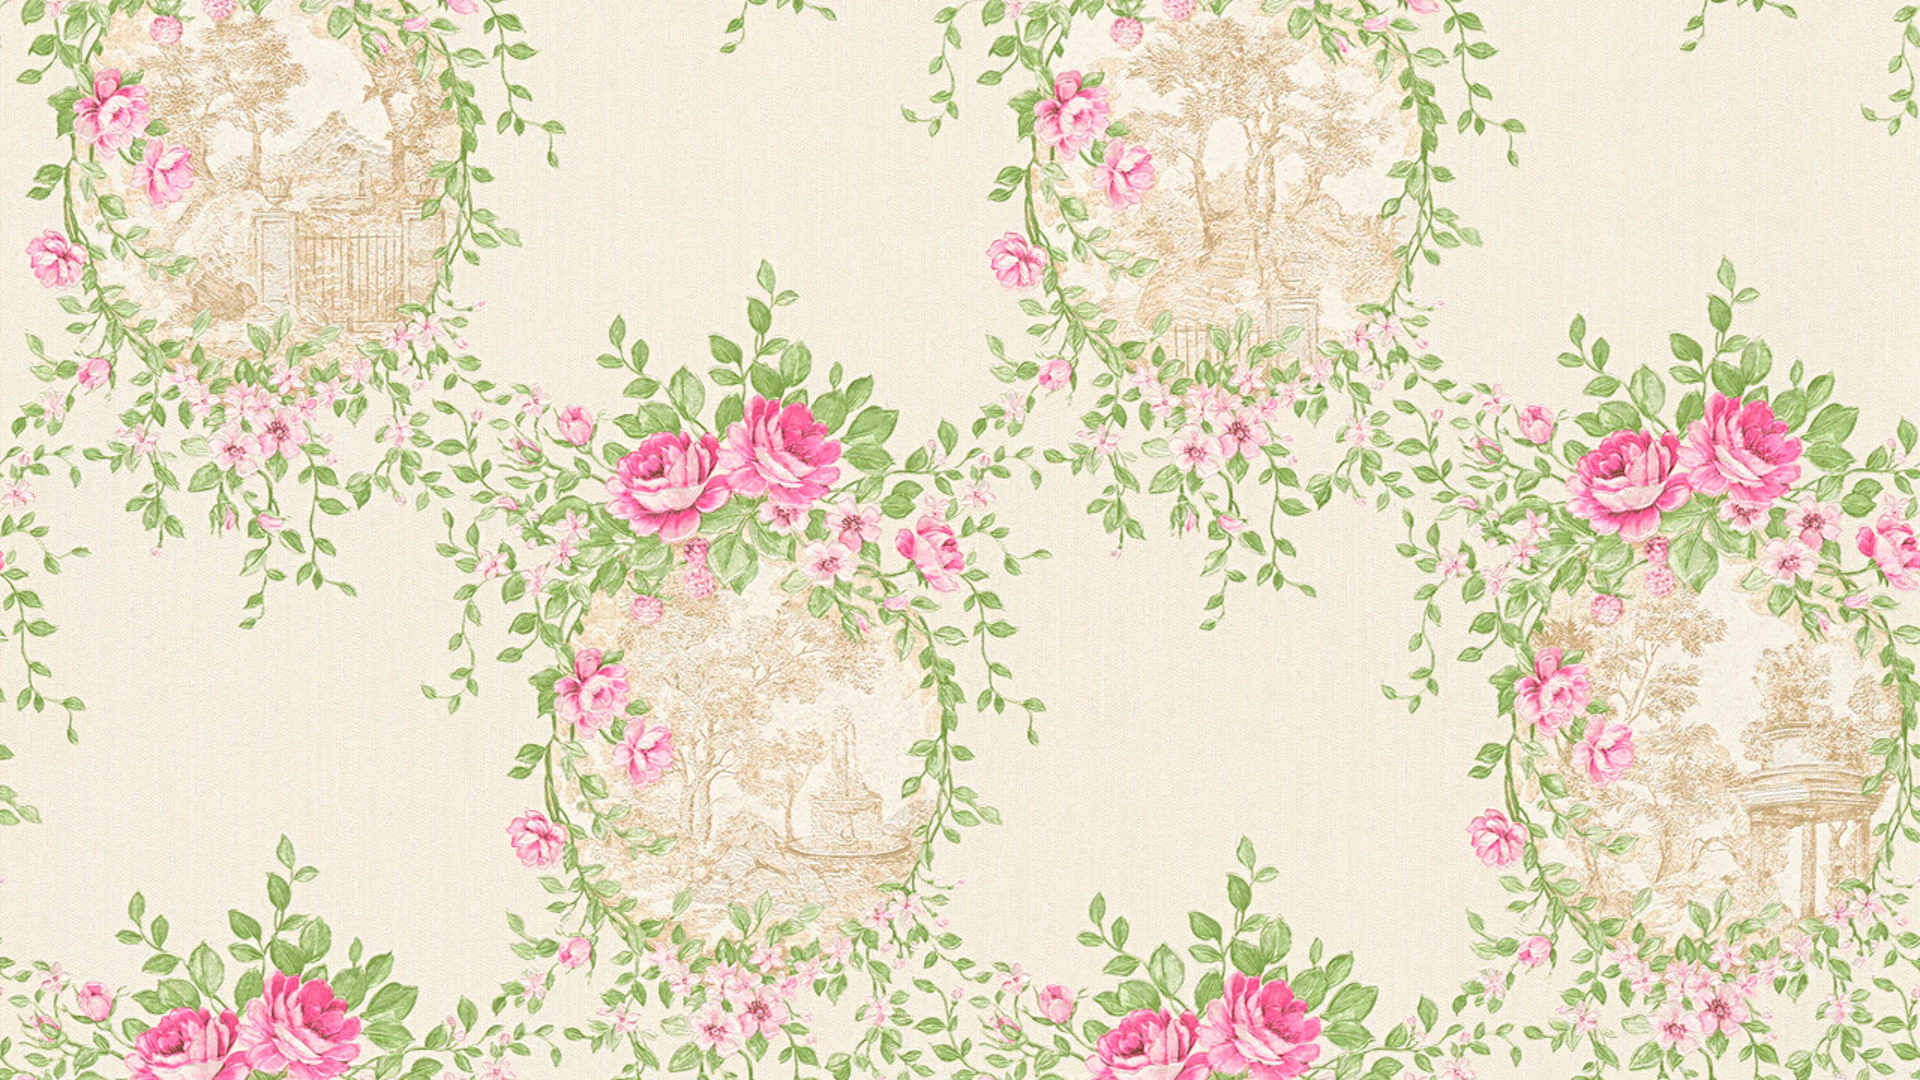 Papier peint vinyle rose classique rétro ornements de campagne fleurs & nature château 5 992